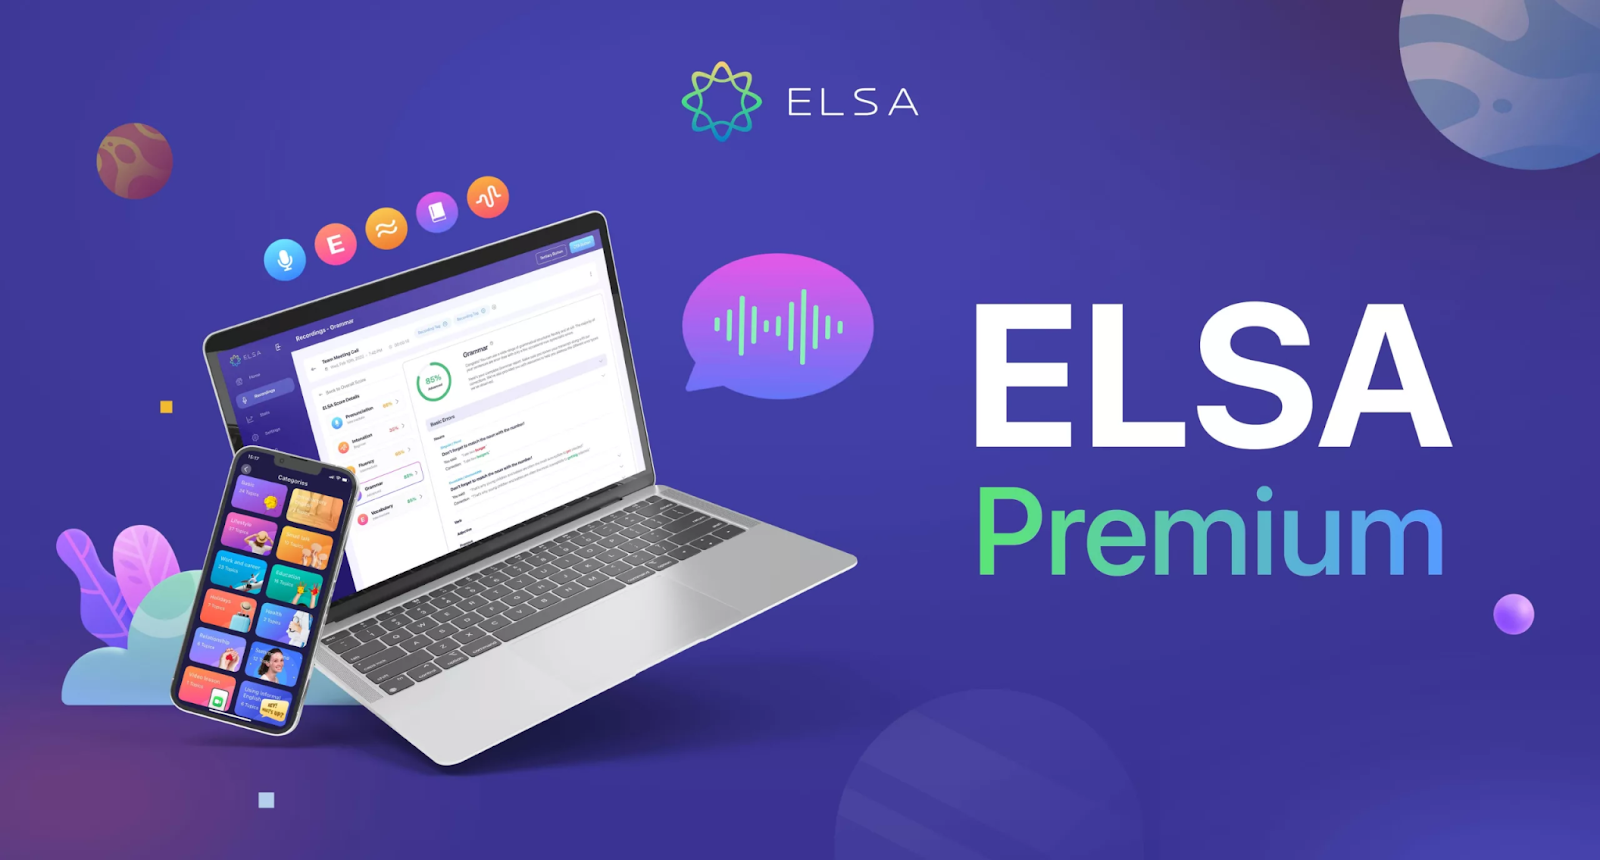 ELSA Premium - Luyện nói tiếng anh như người bản xứ